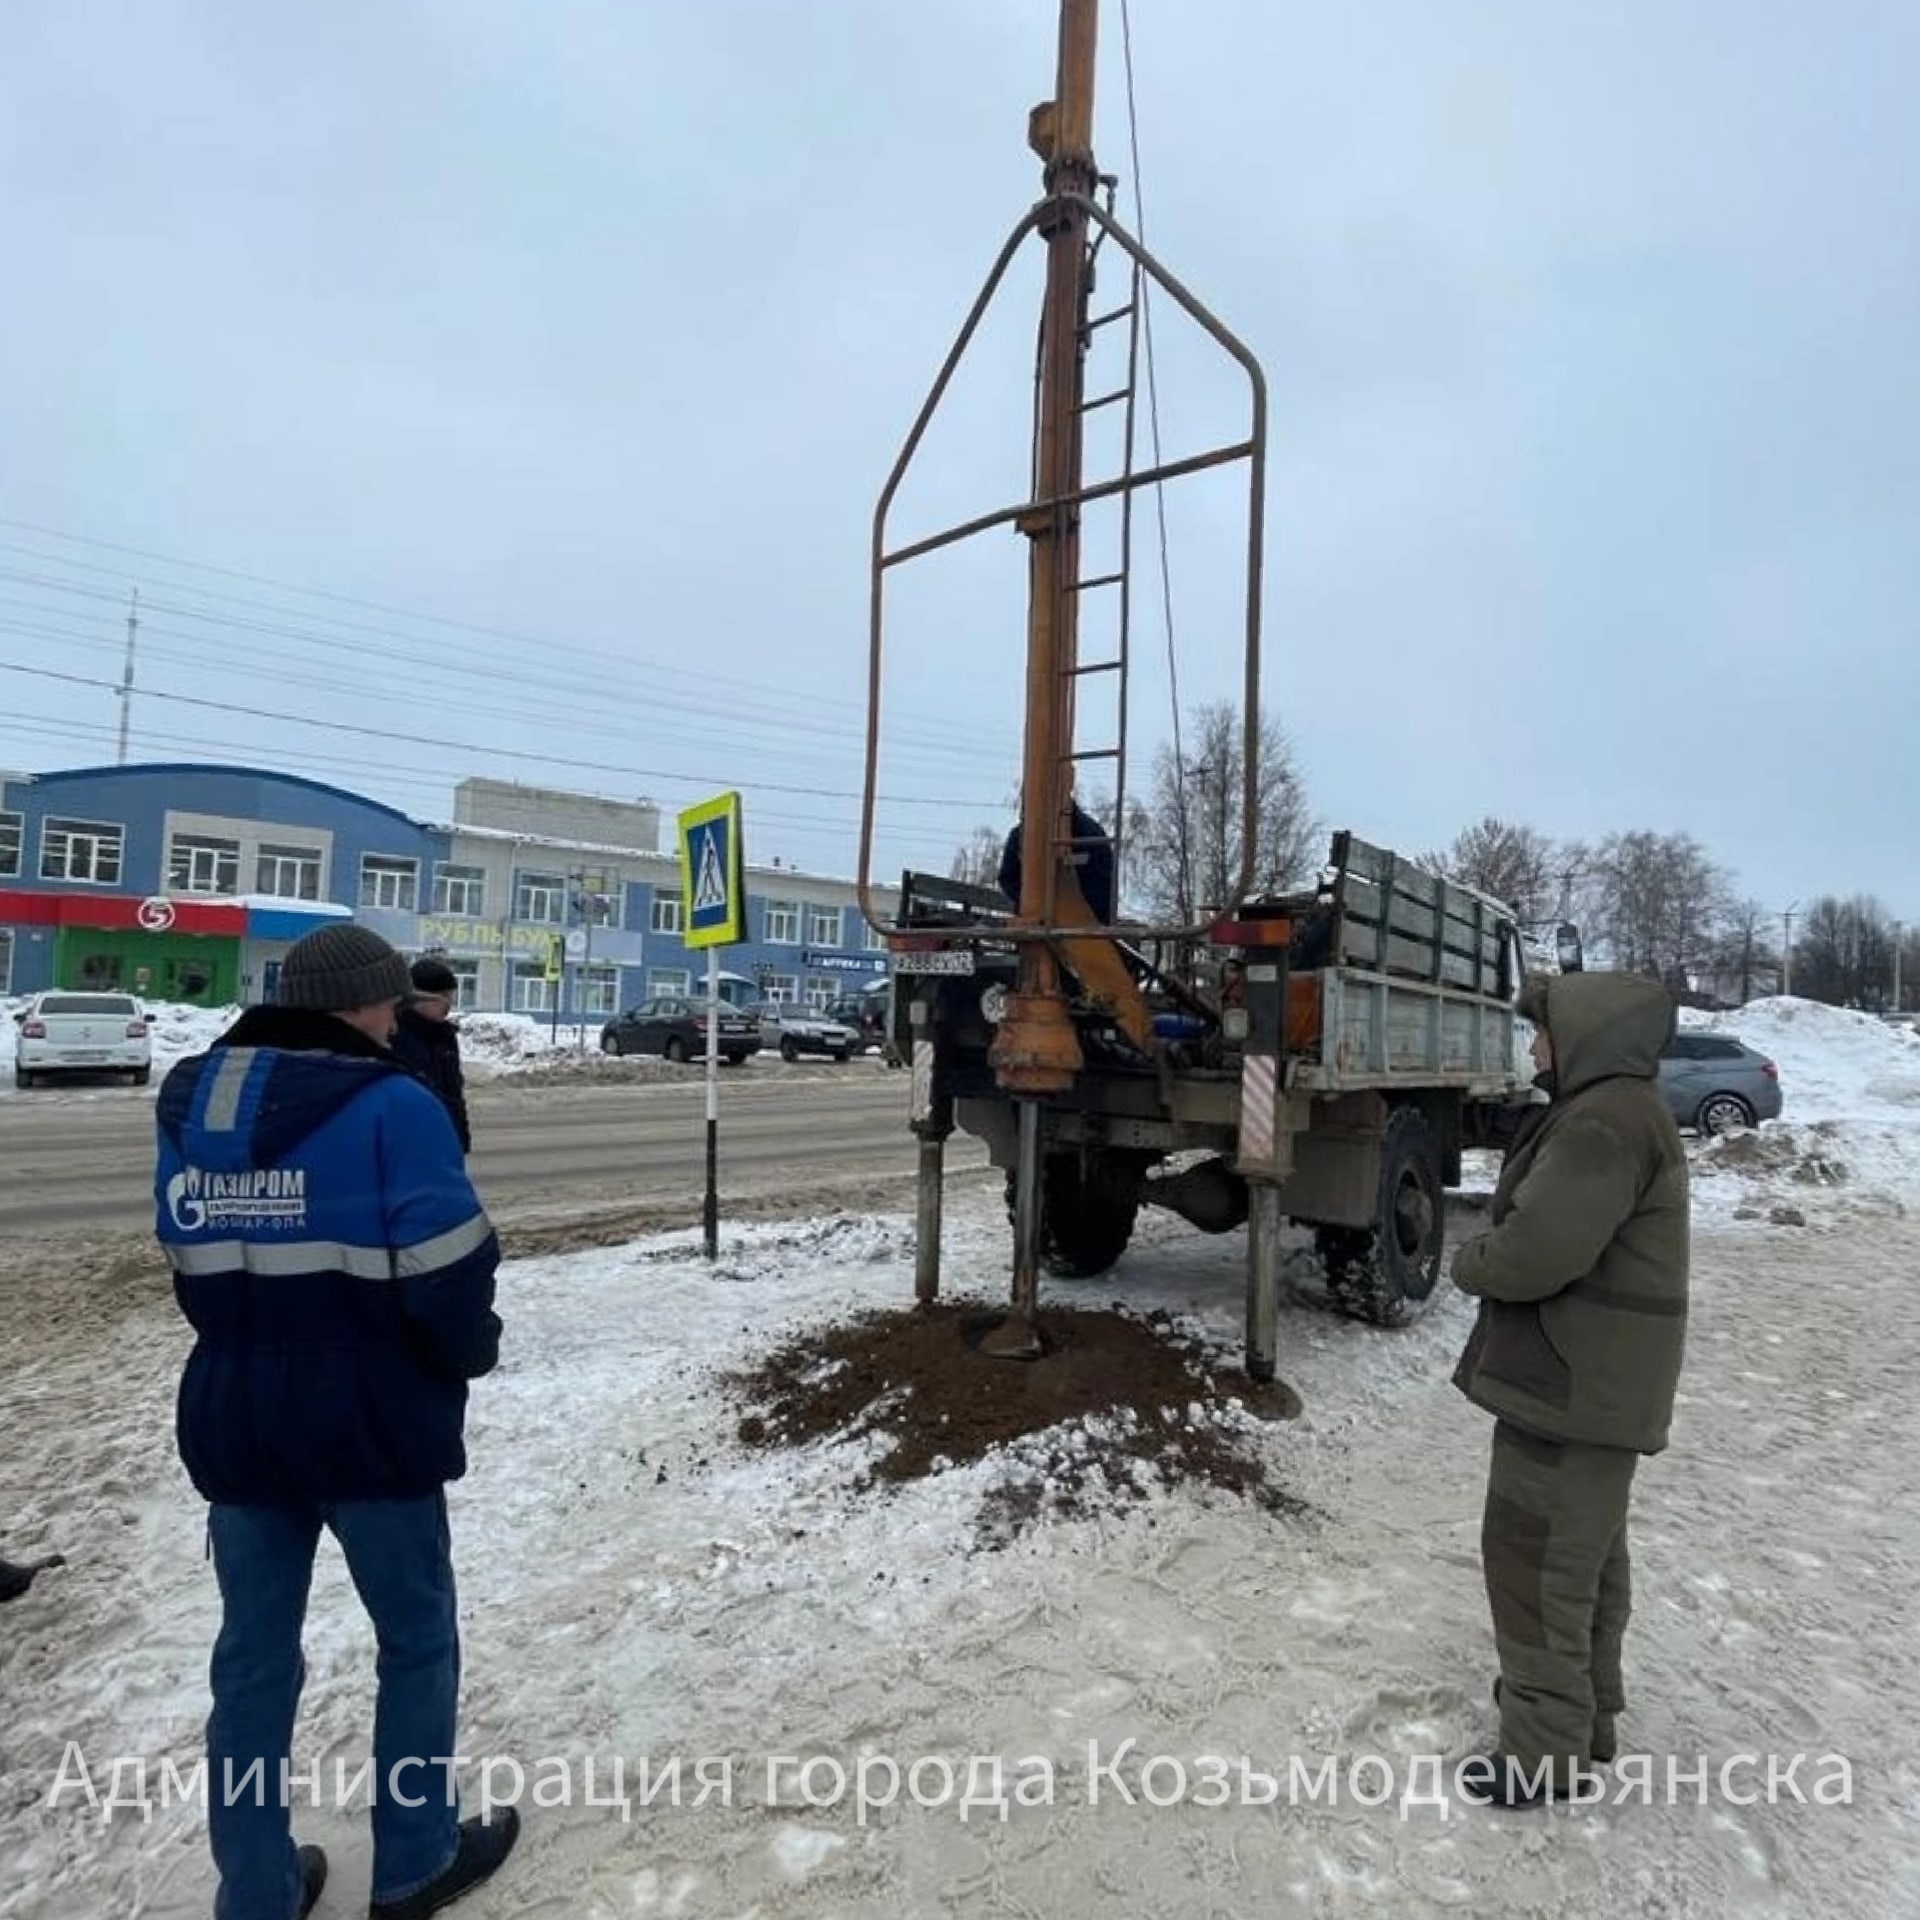 В Козмодемьянске установили шесть светофоров на солнечных батареях